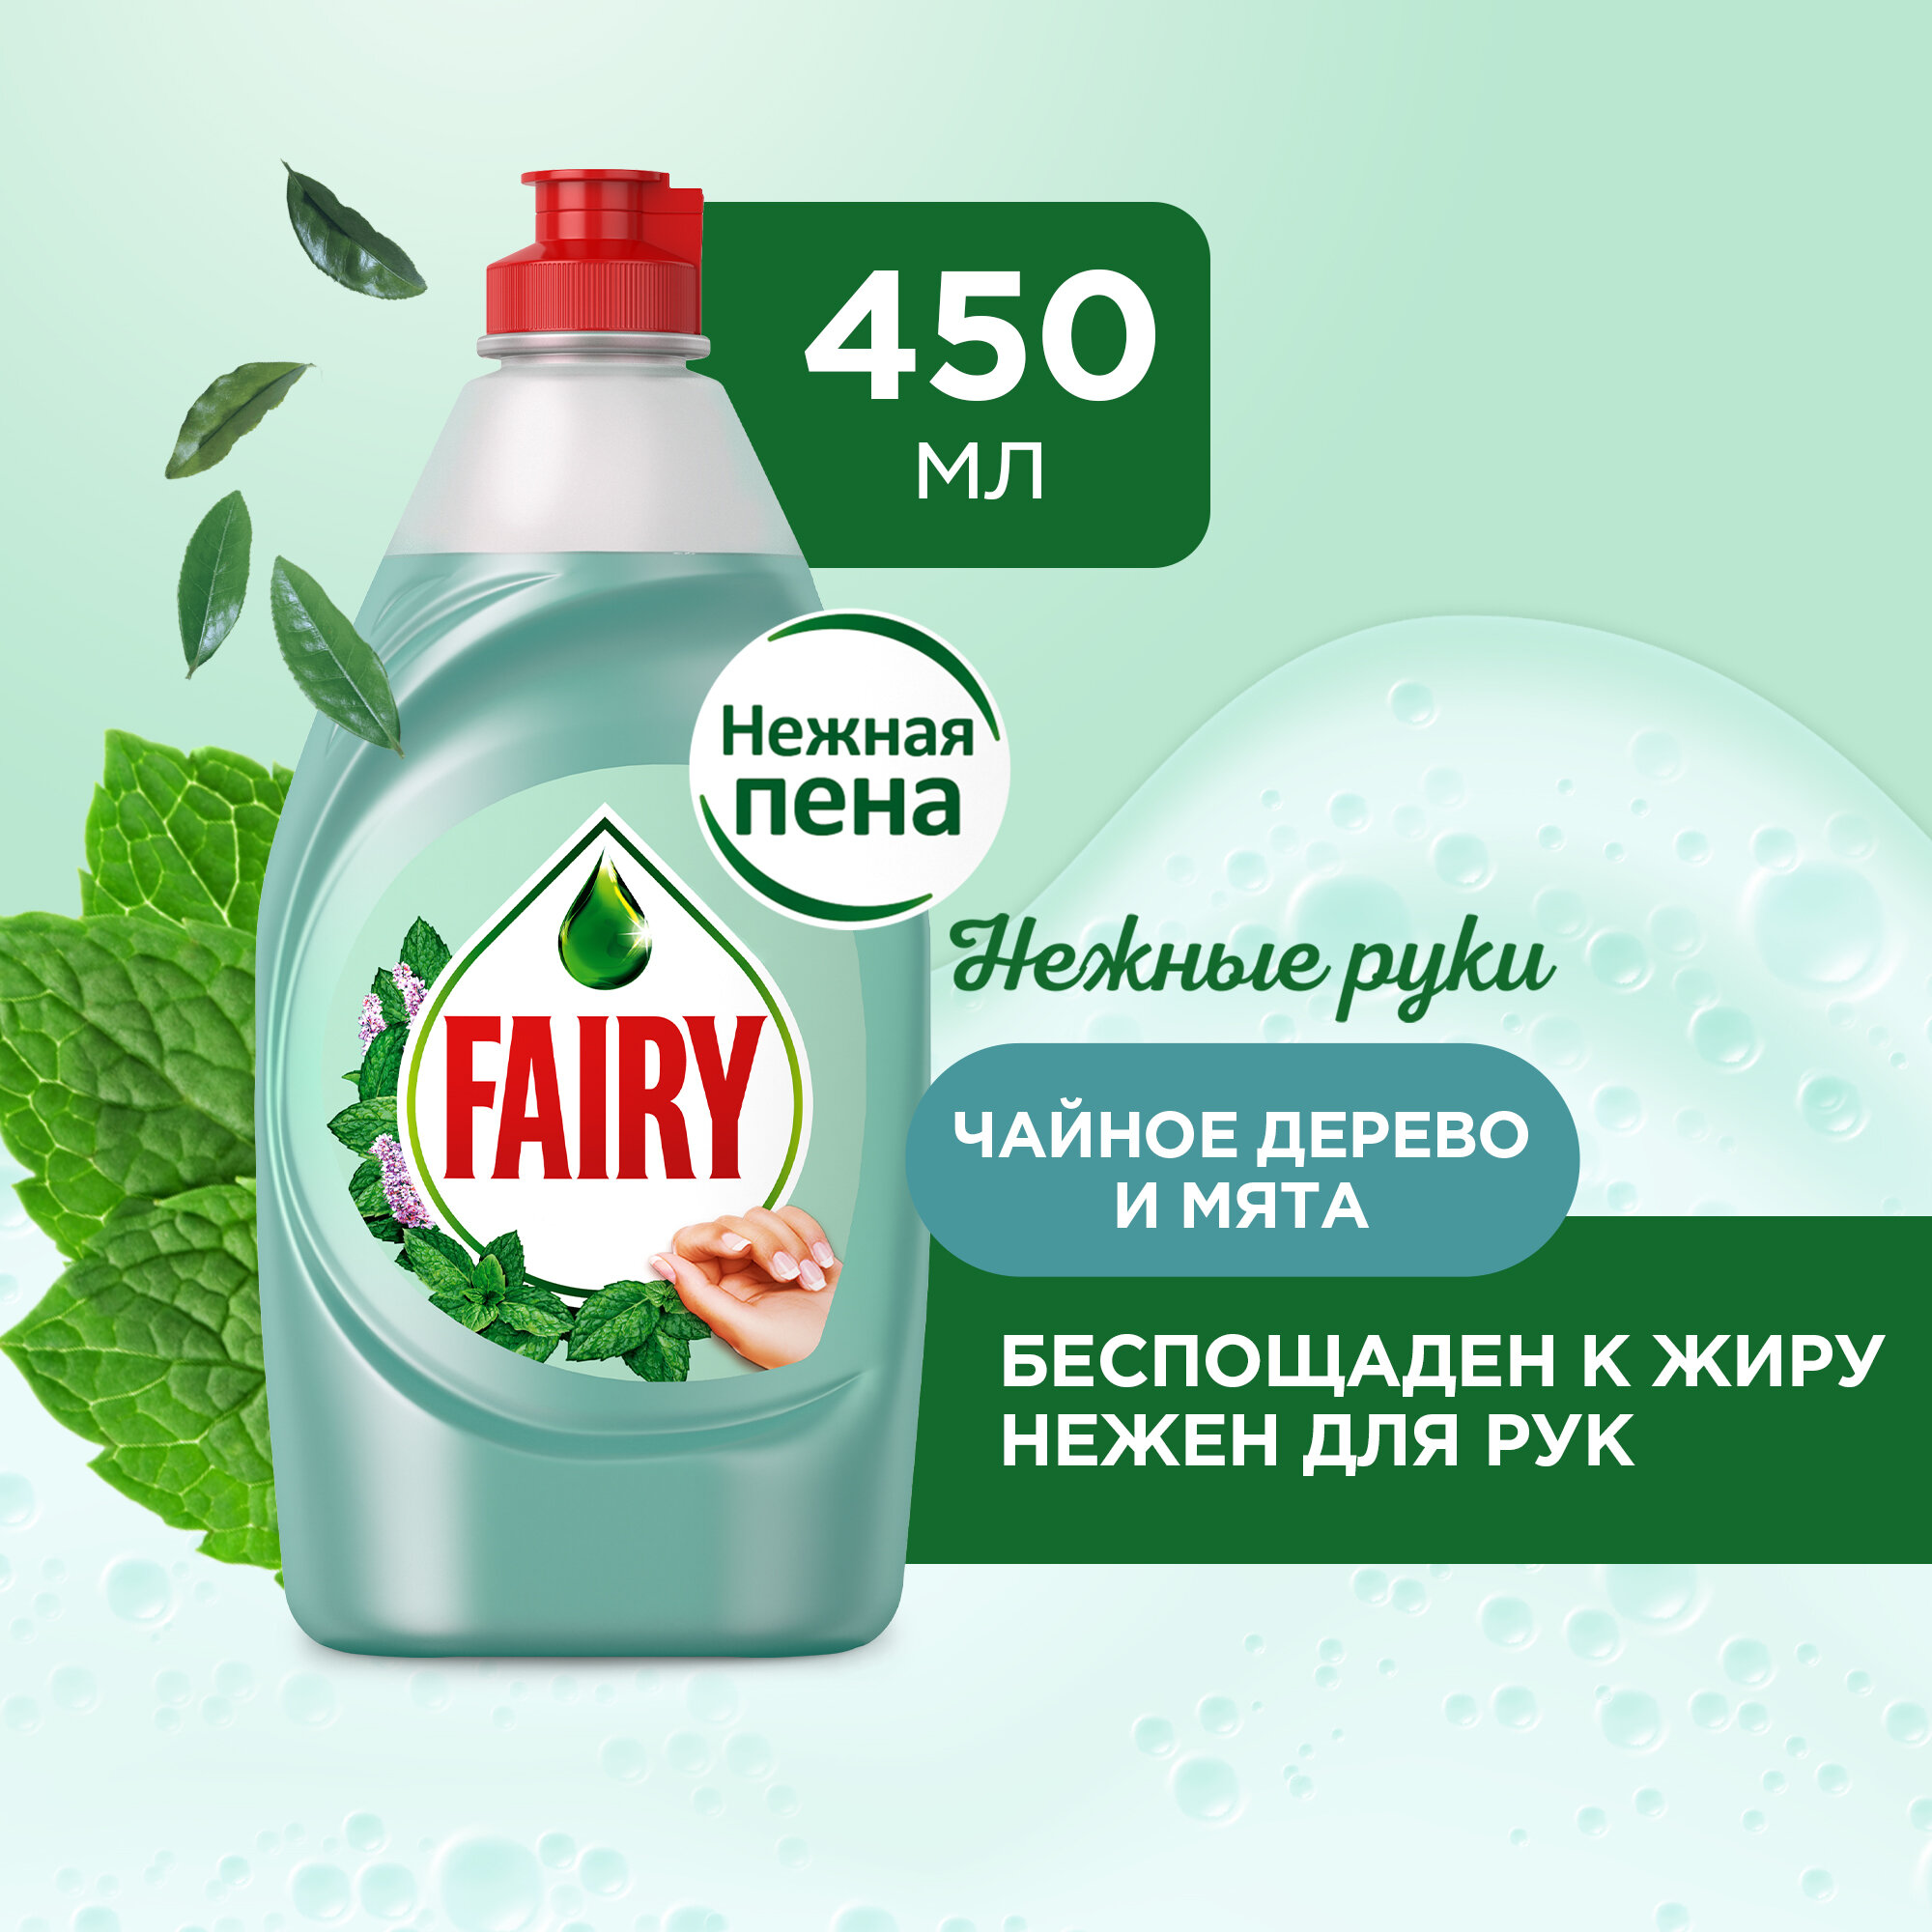 Fairy     Fairy "   ", 450 